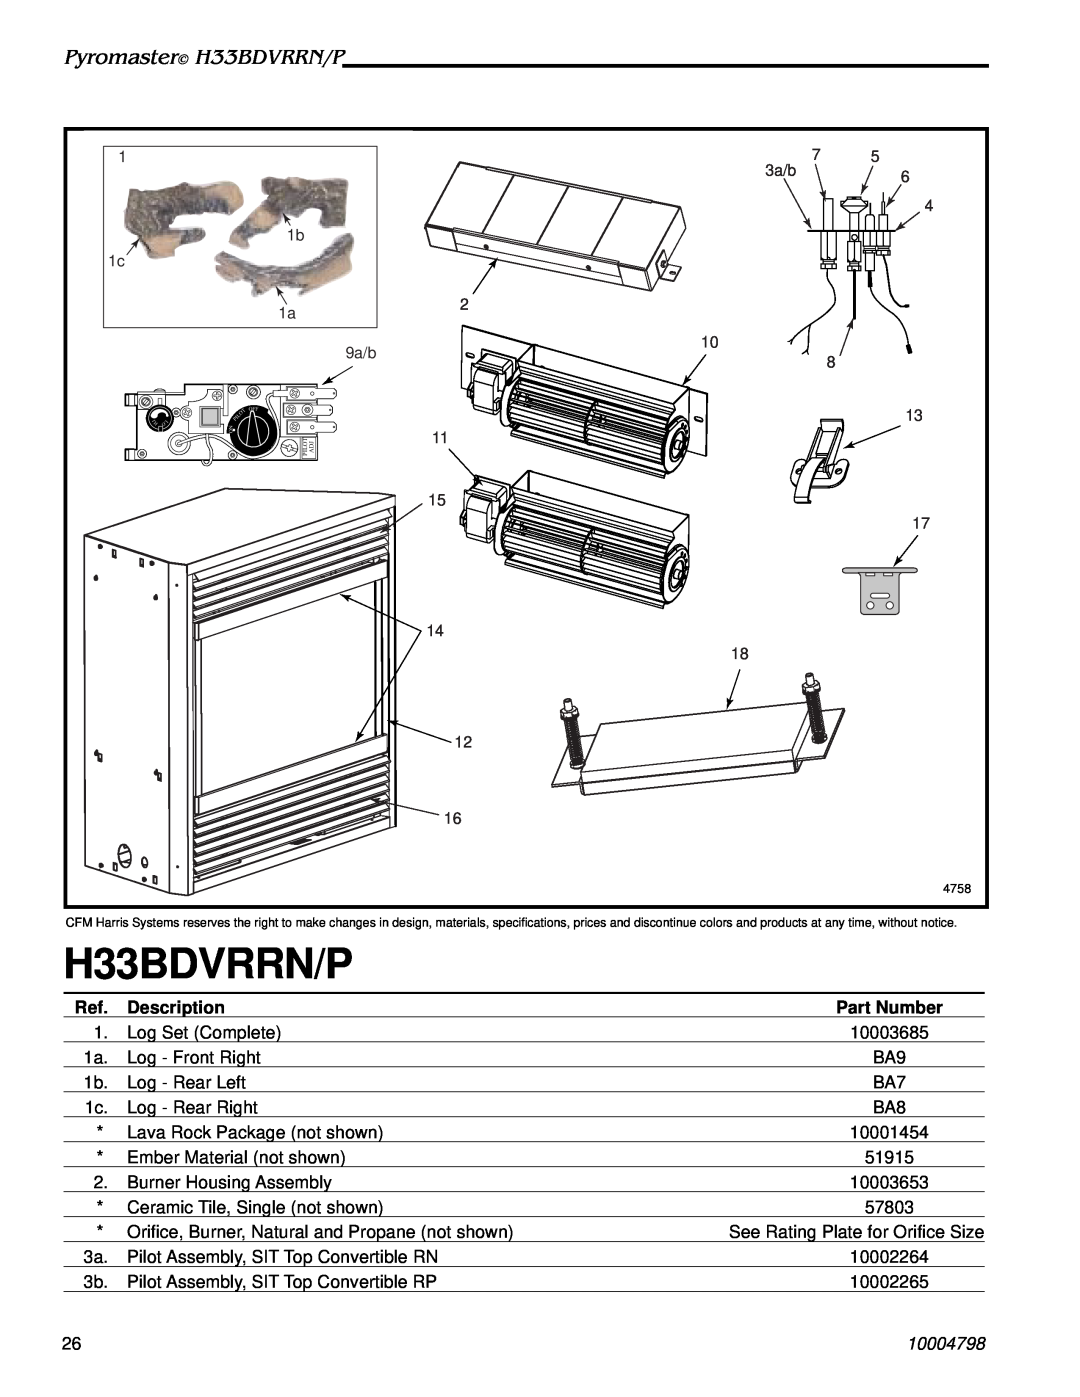 Vermont Casting H33BDVRRNP manual Pyromaster H33BDVRRN/P, Description, Part Number, 10004798 